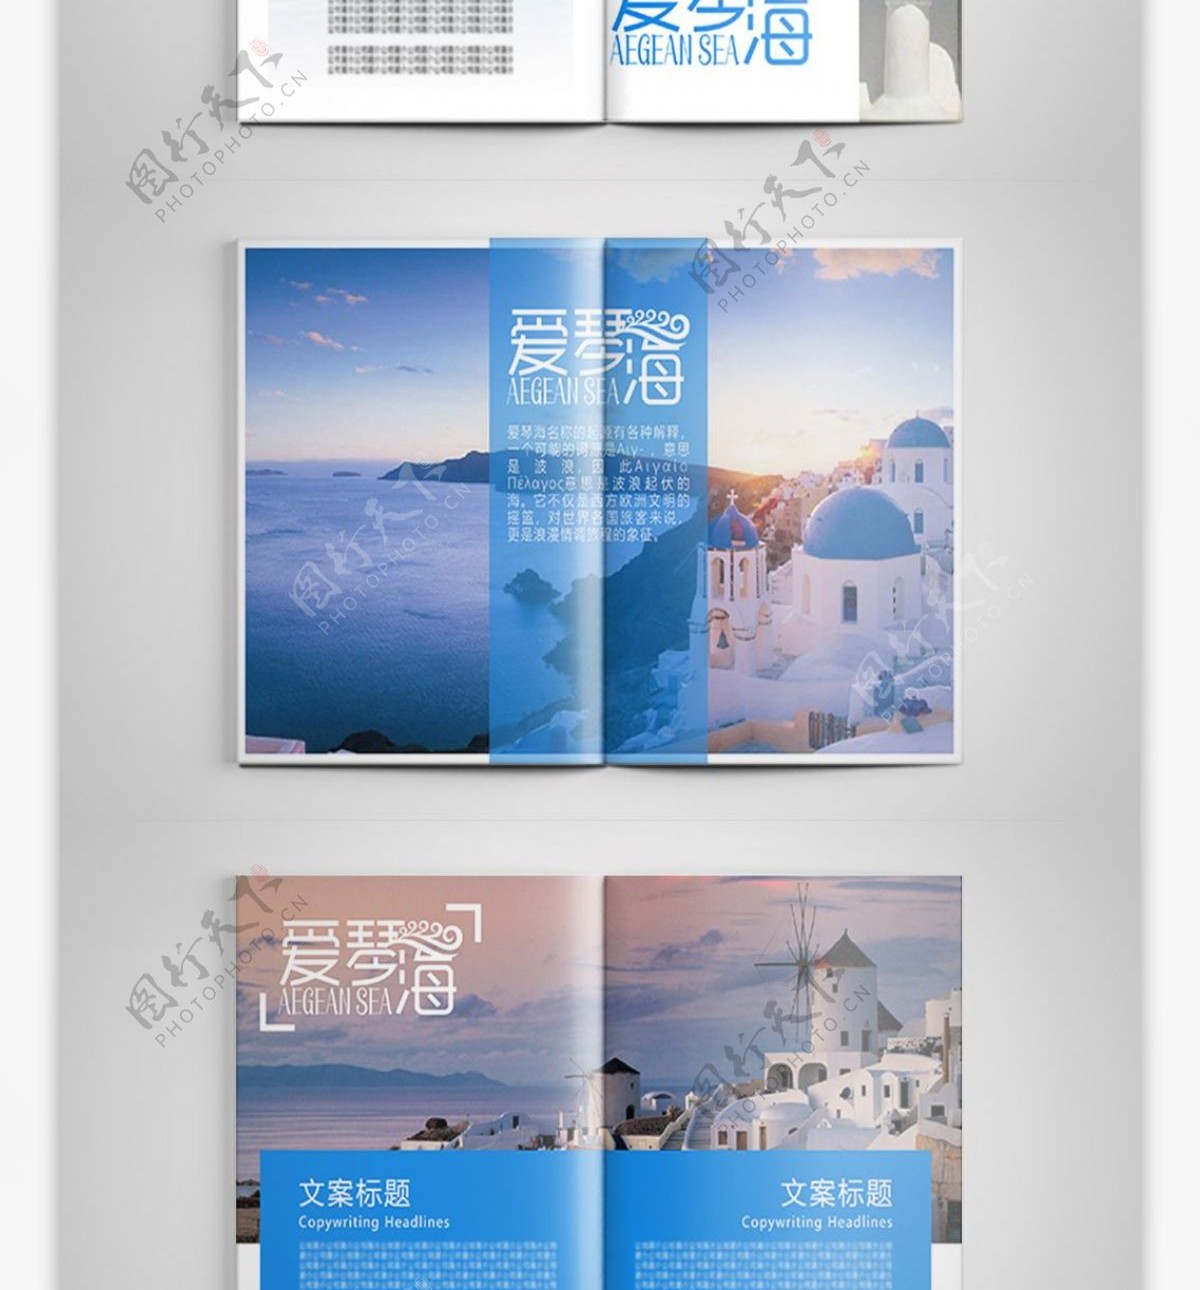 蓝色唯美爱琴海旅游宣传画册